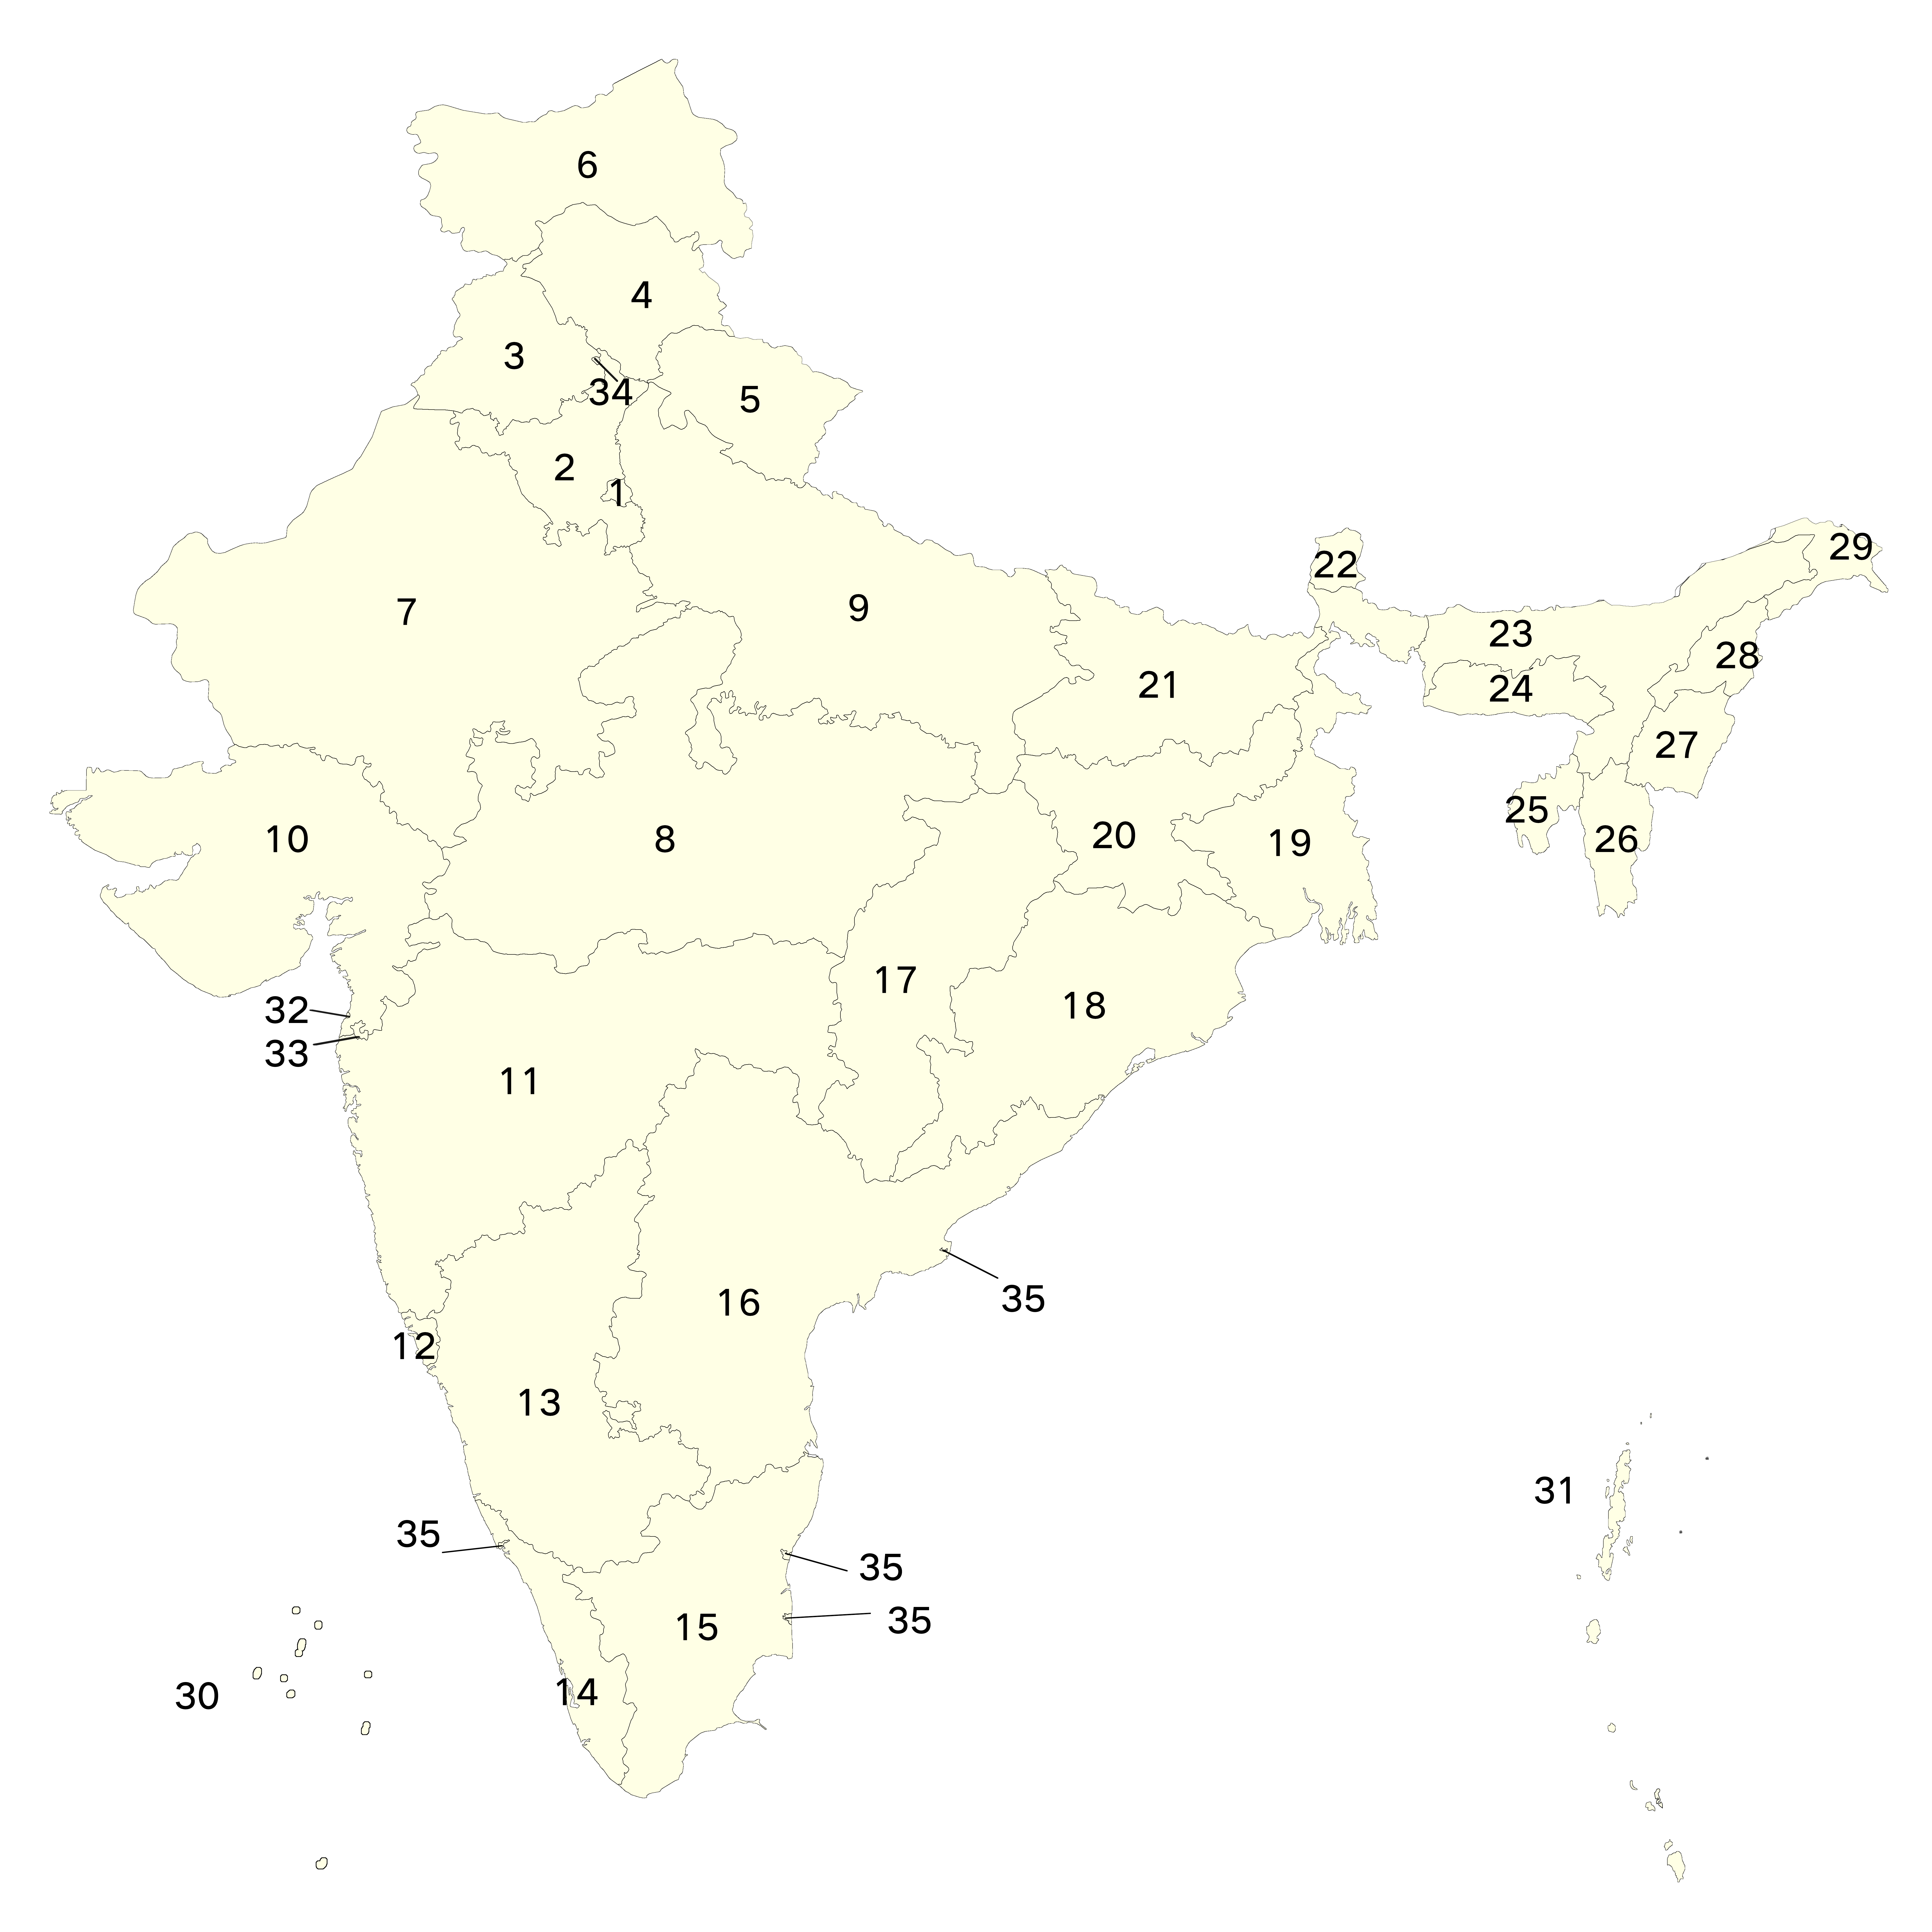 印度行政區劃